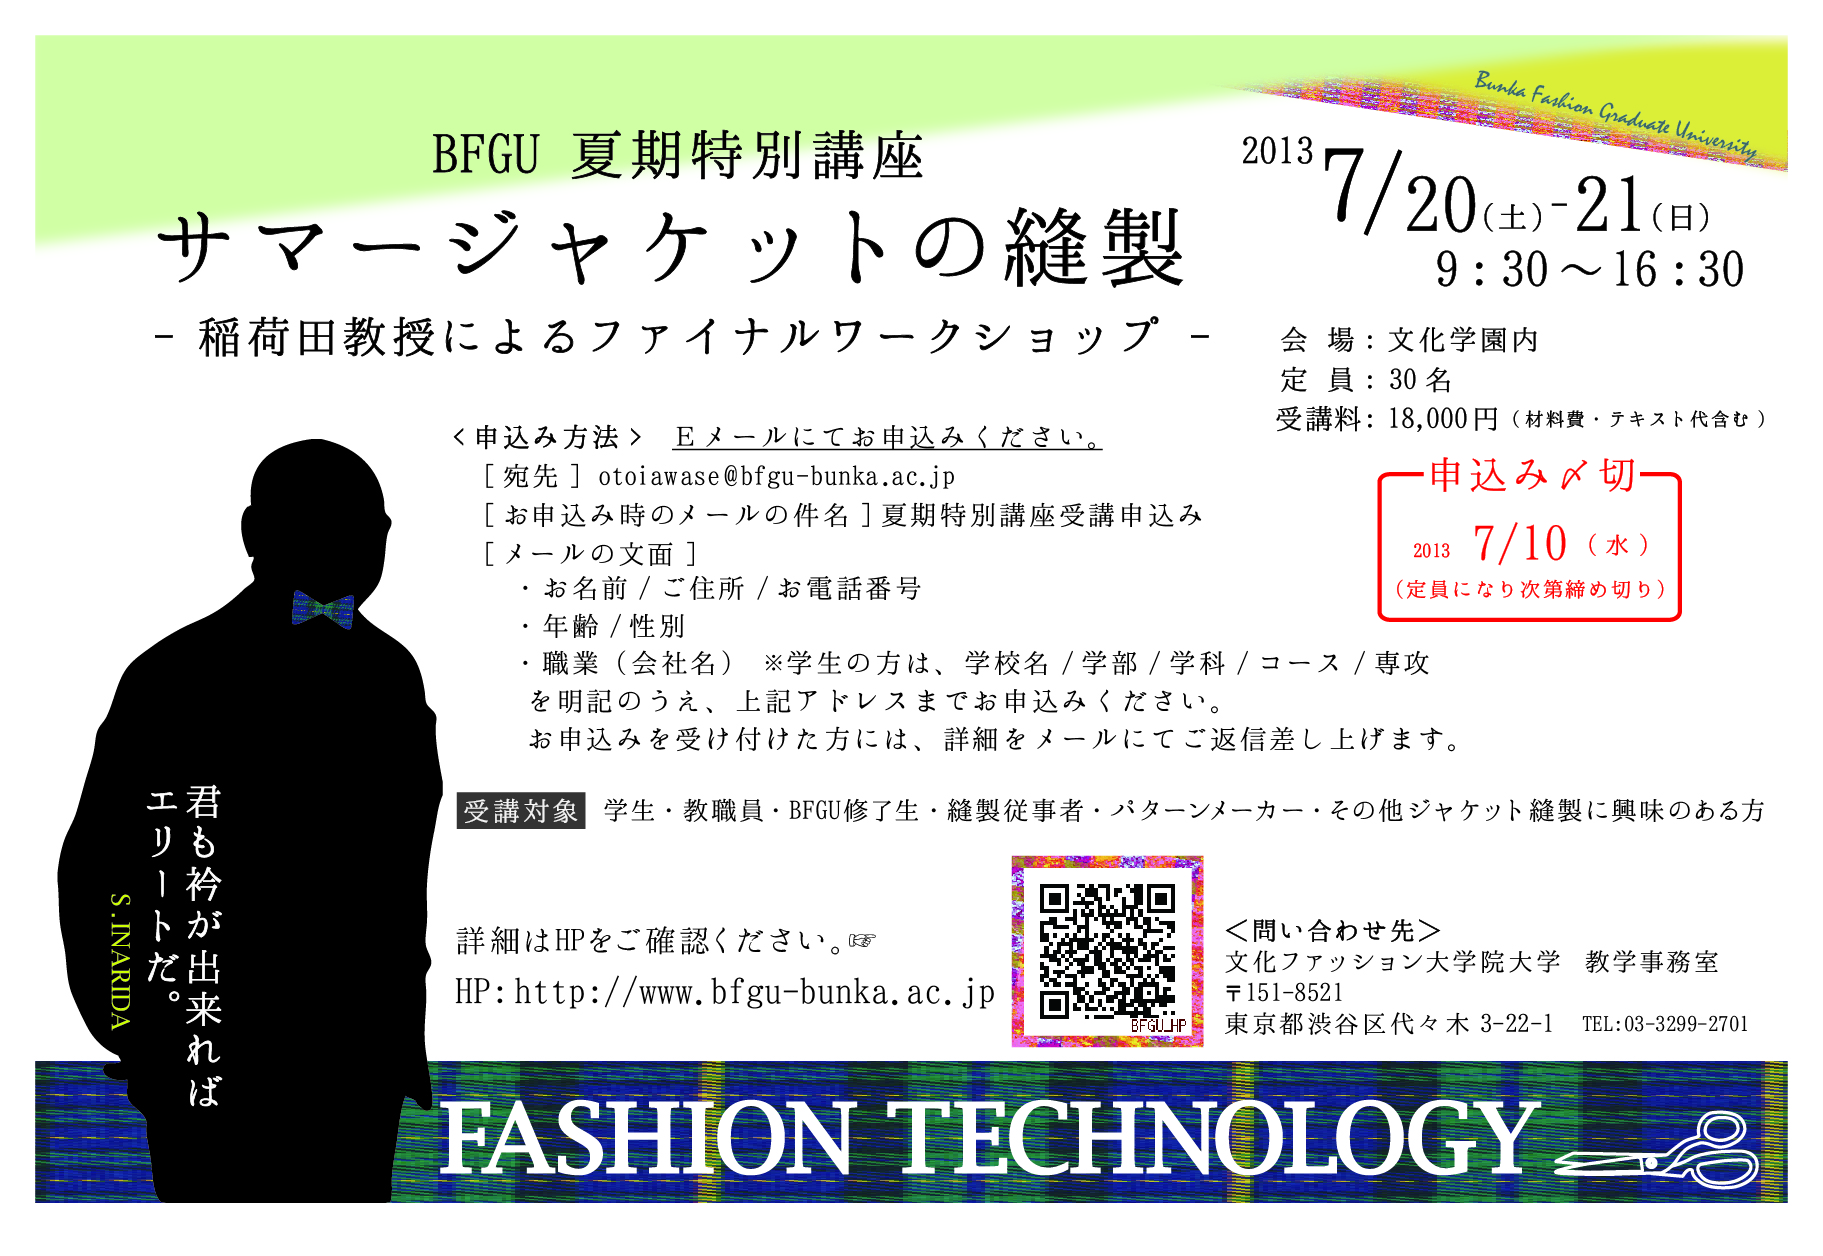 文化ファッション大学院大学 夏期特別講座「サマージャケットの縫製‐稲荷田教授によるファイナルワークショップ‐」